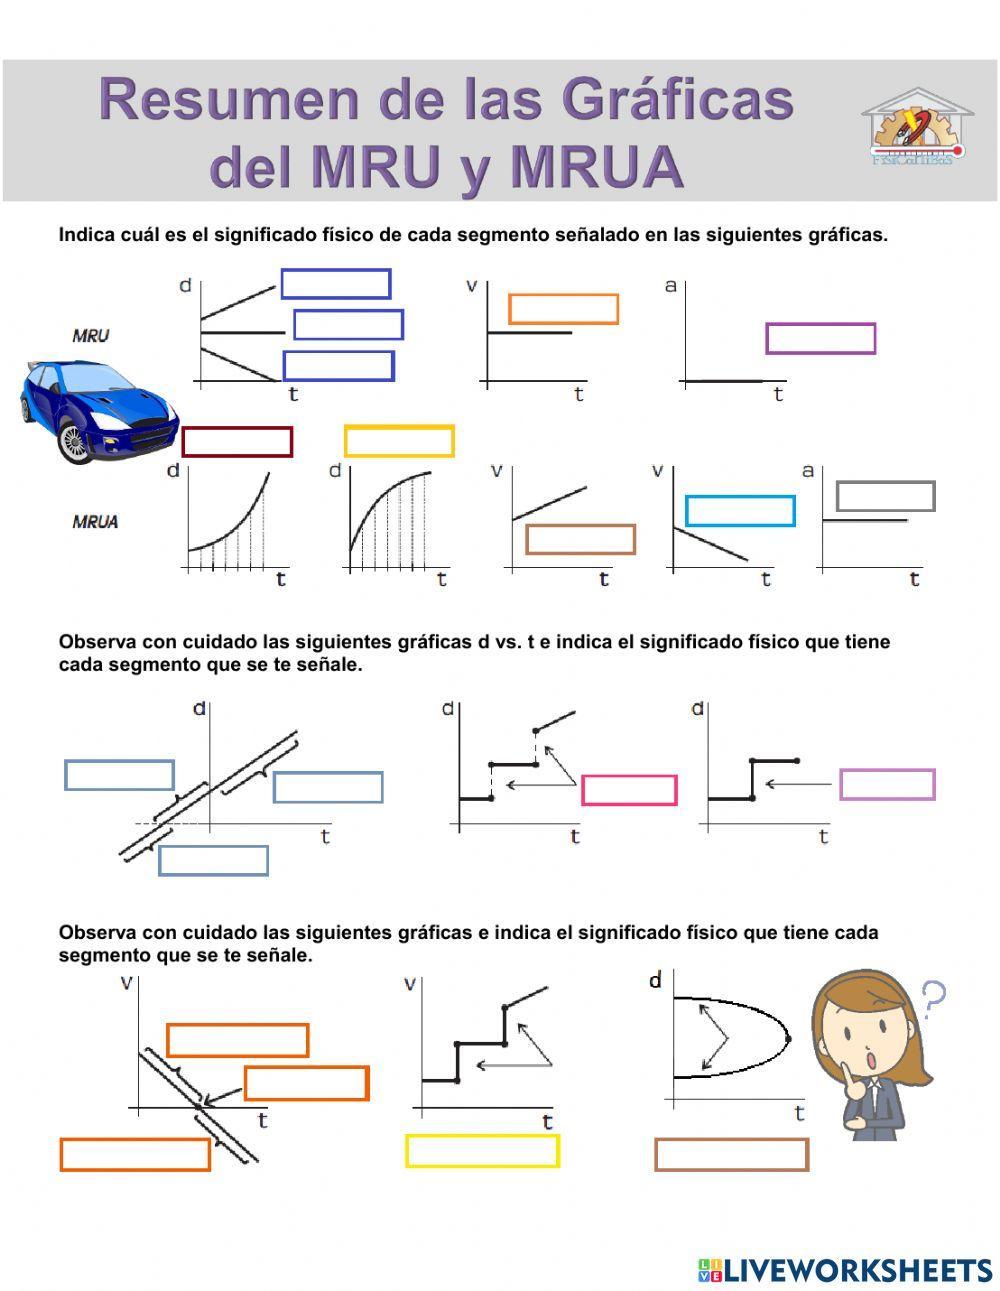 Resumen de Gráficas MRU y MRUA